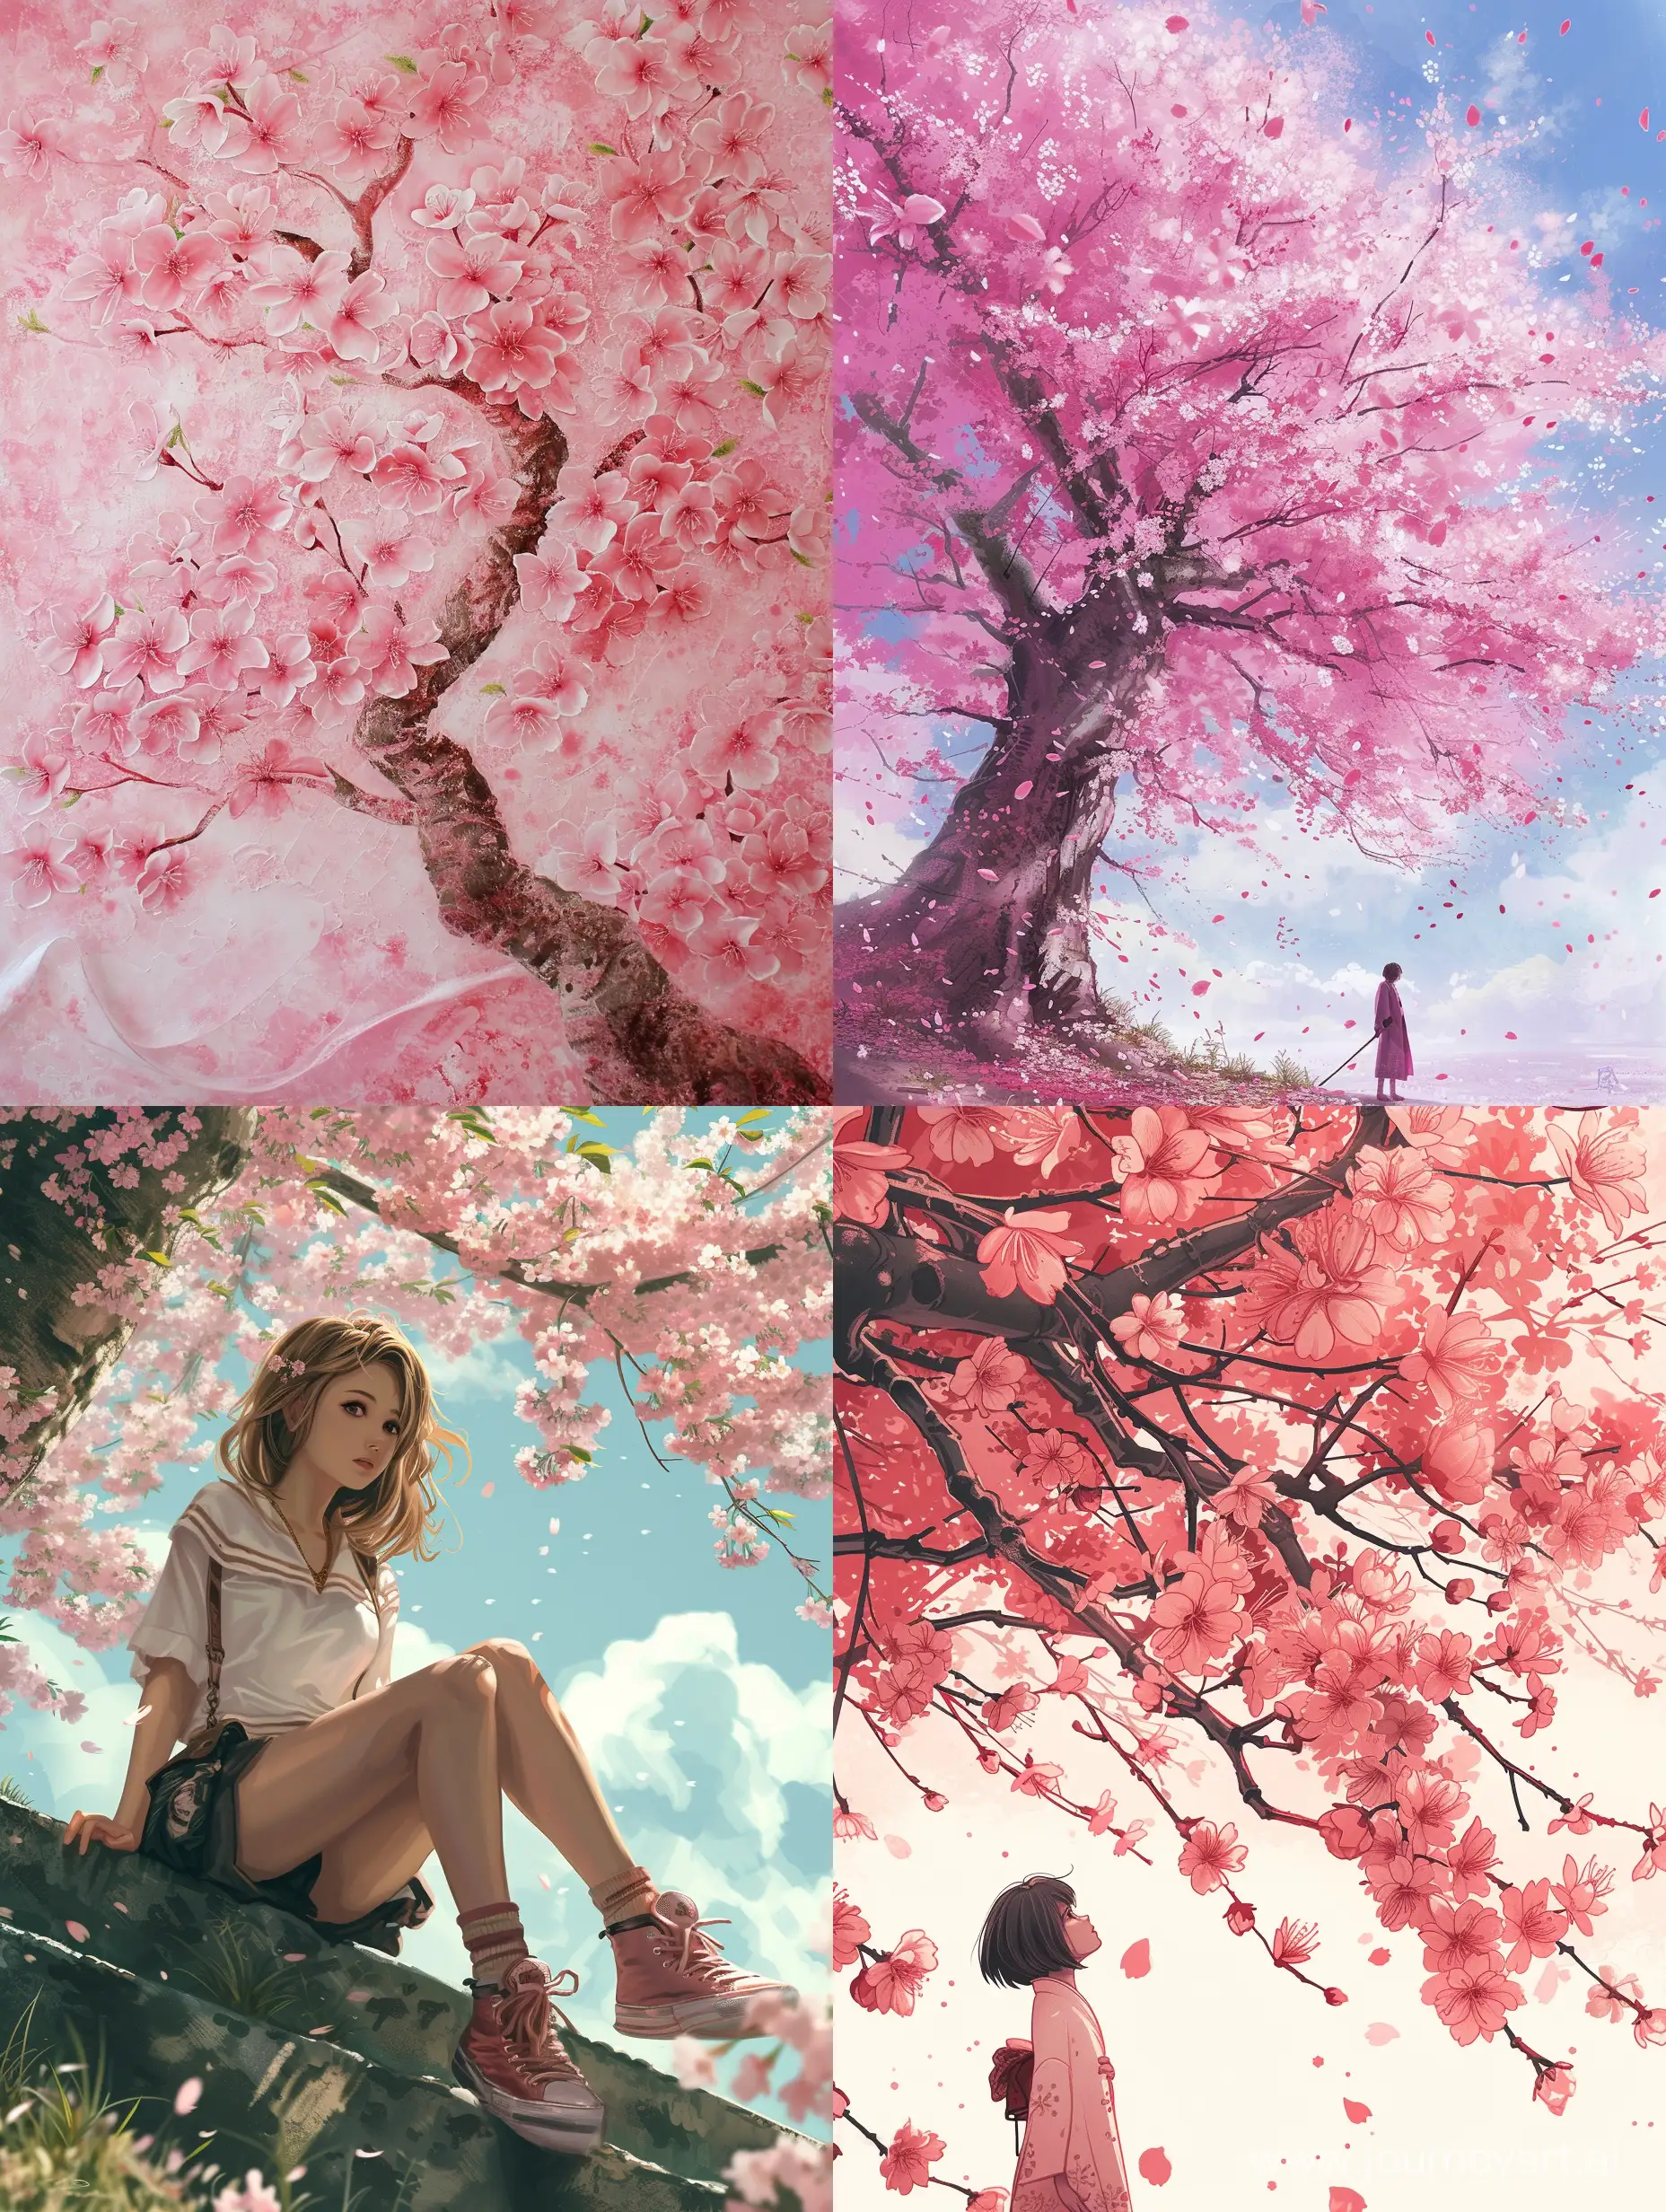 Vibrant-Sakura-Blossoms-in-a-34-Aspect-Ratio-Landscape